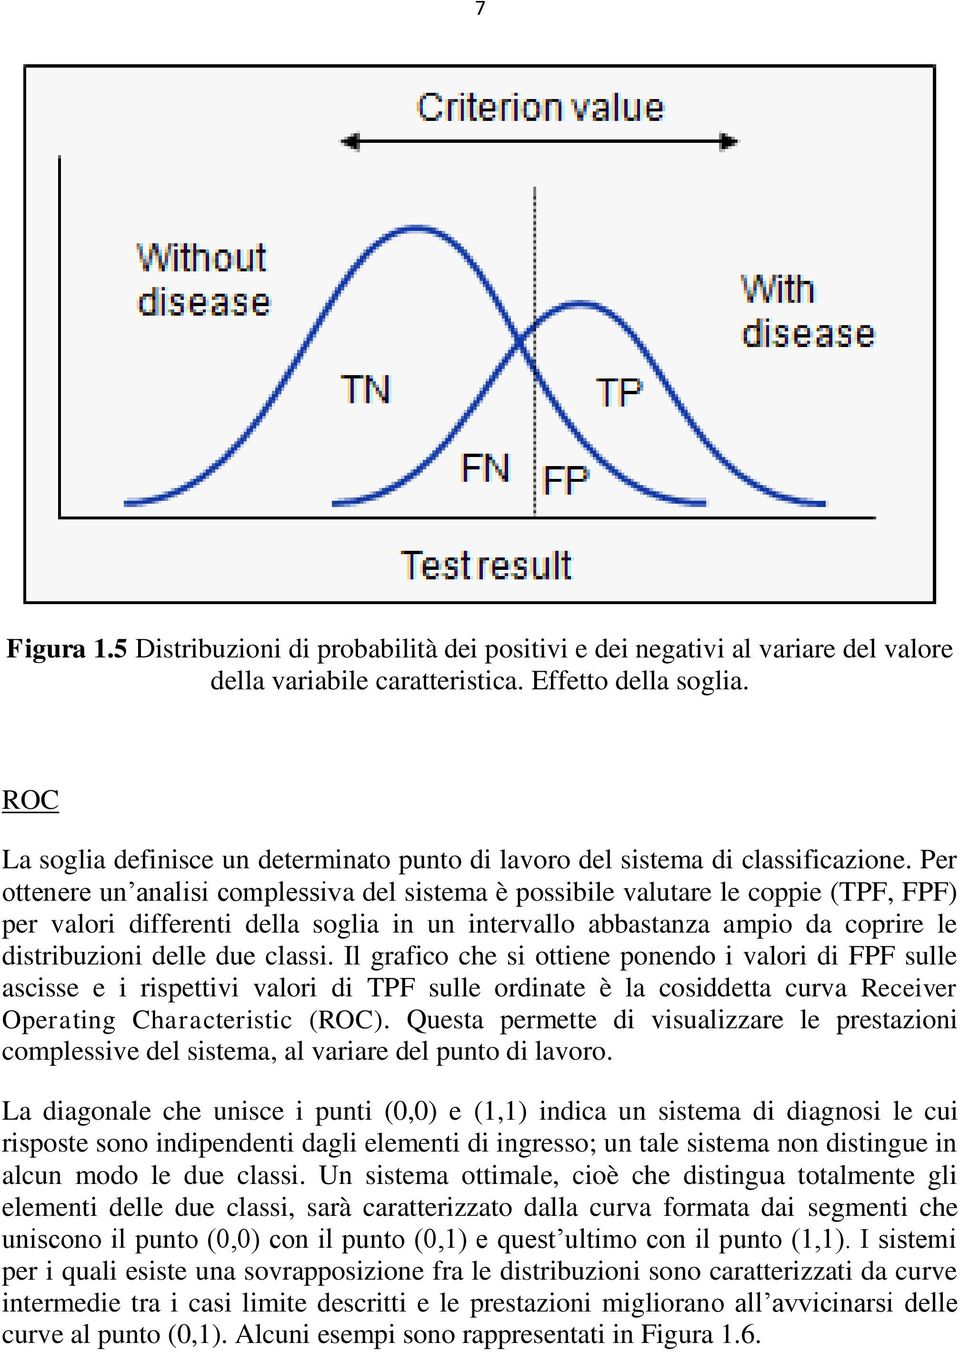 Per ottenere un analisi complessiva del sistema è possibile valutare le coppie (TPF, FPF) per valori differenti della soglia in un intervallo abbastanza ampio da coprire le distribuzioni delle due